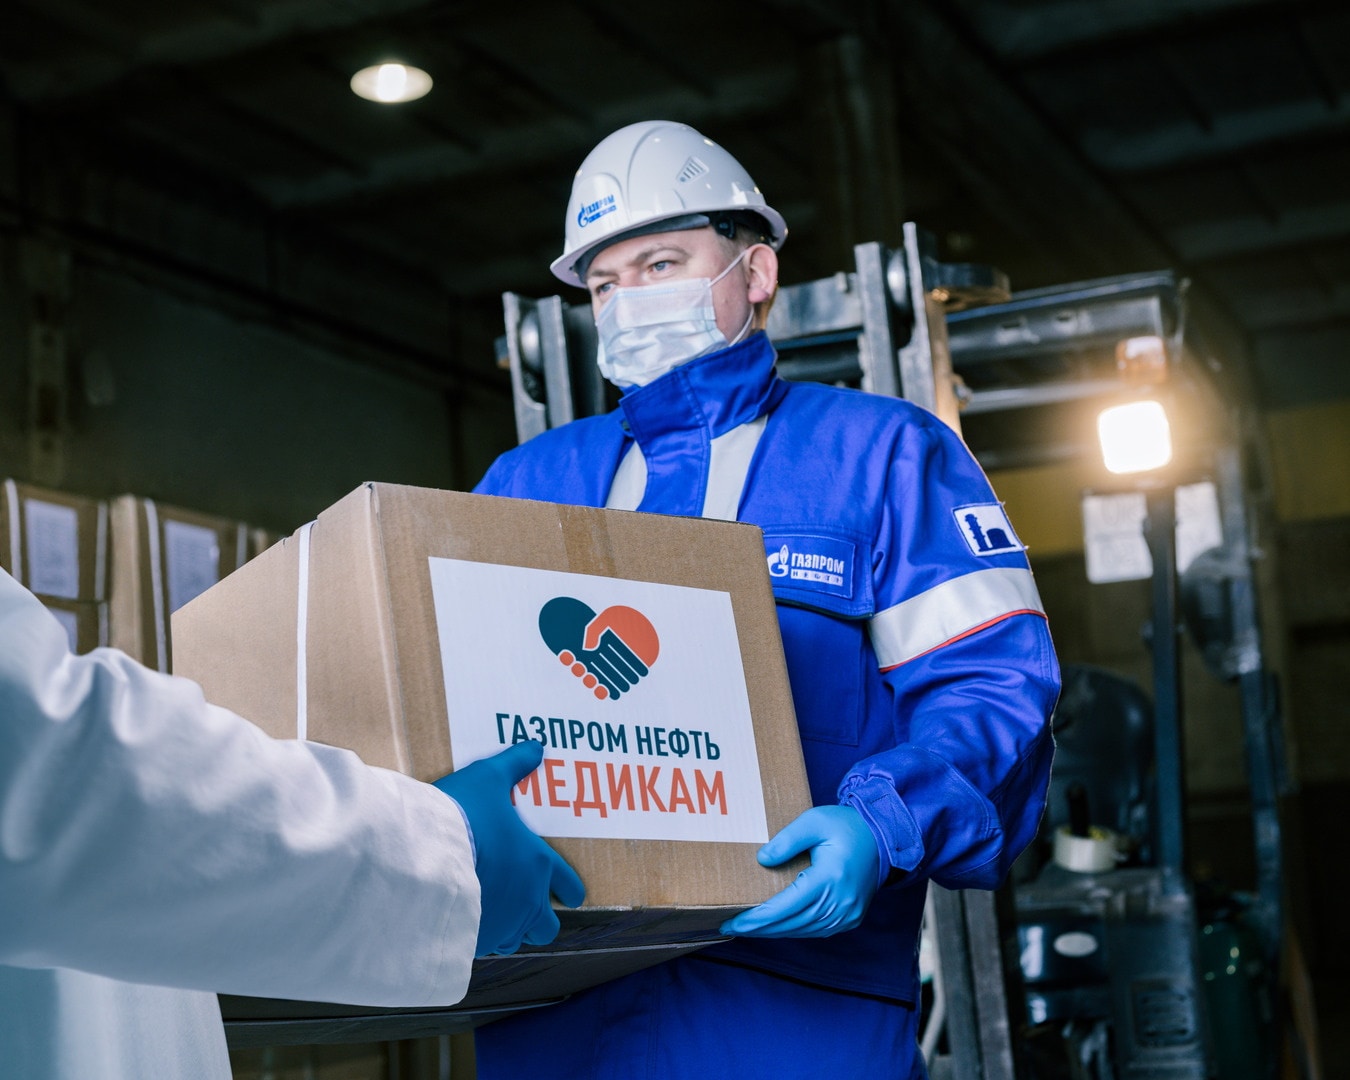 Газпромнефть-Восток, Томские новости, медицина защита коронавирус «Газпромнефть-Восток» продолжает поддерживать медиков в борьбе с COVID-19